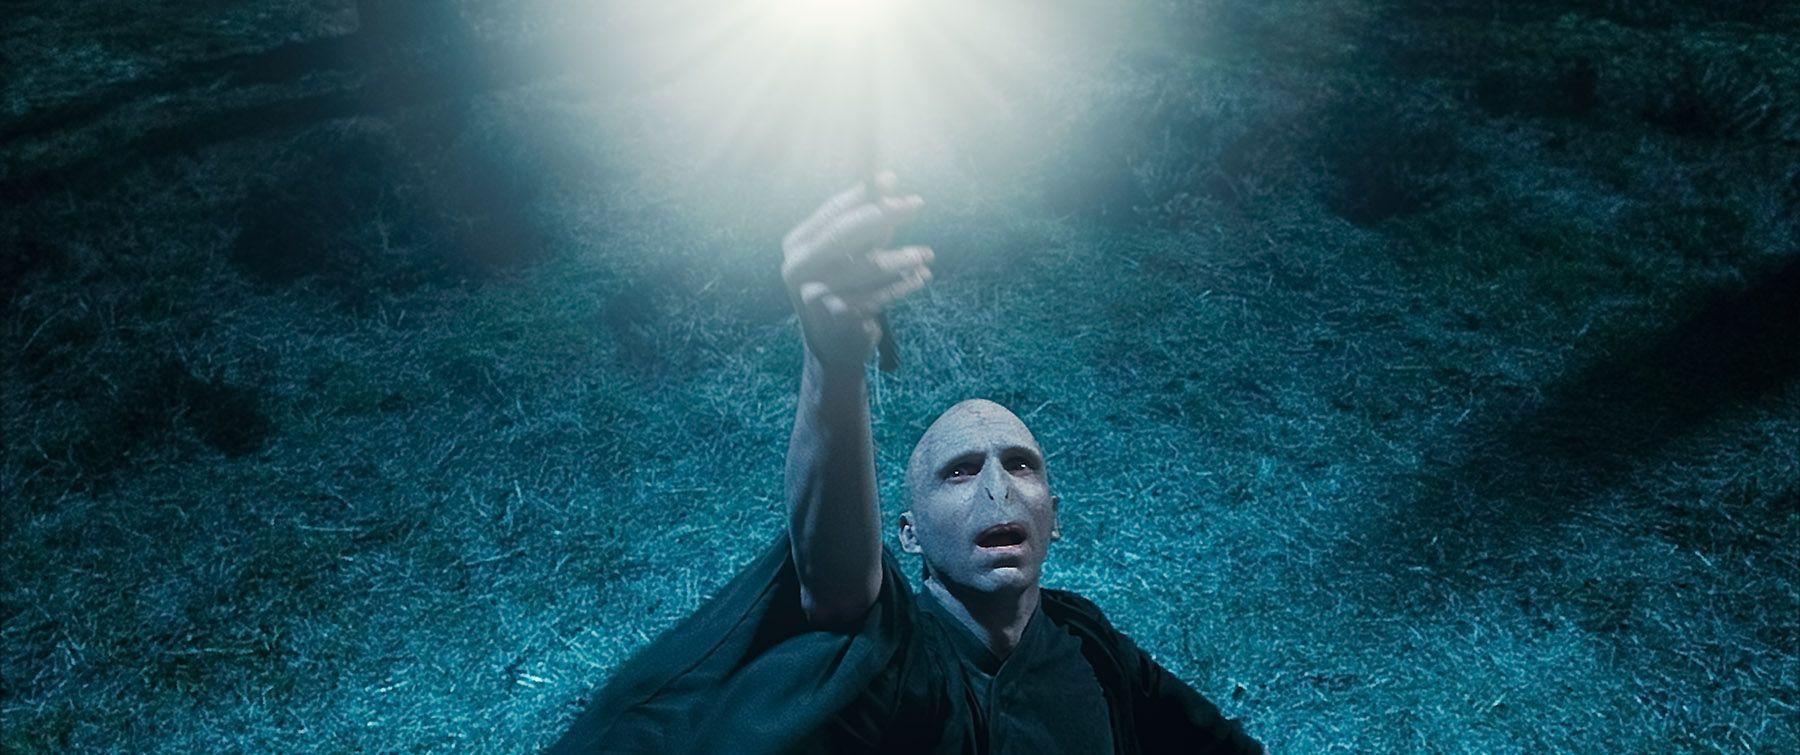 Voldemort Casting a Spell Desktop Wallpaper